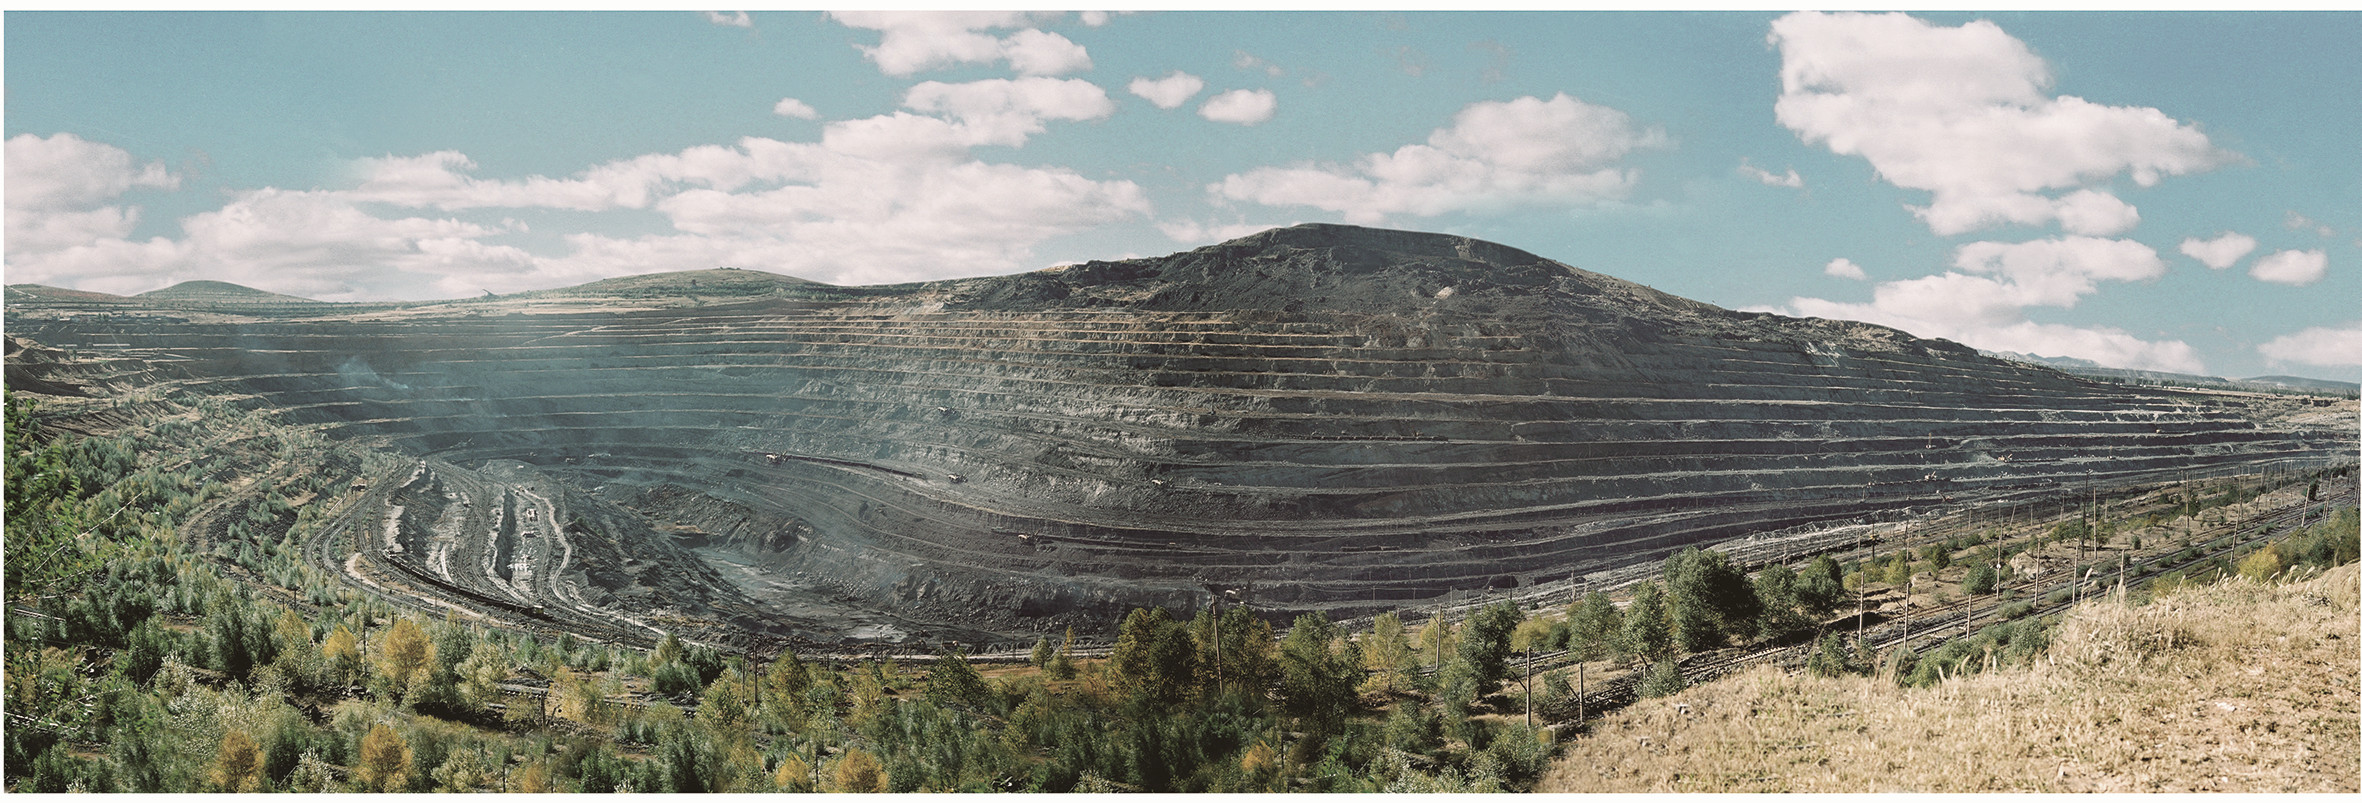 我国自行设计的第一座露天煤矿——内蒙古平庄西露天煤矿.jpg